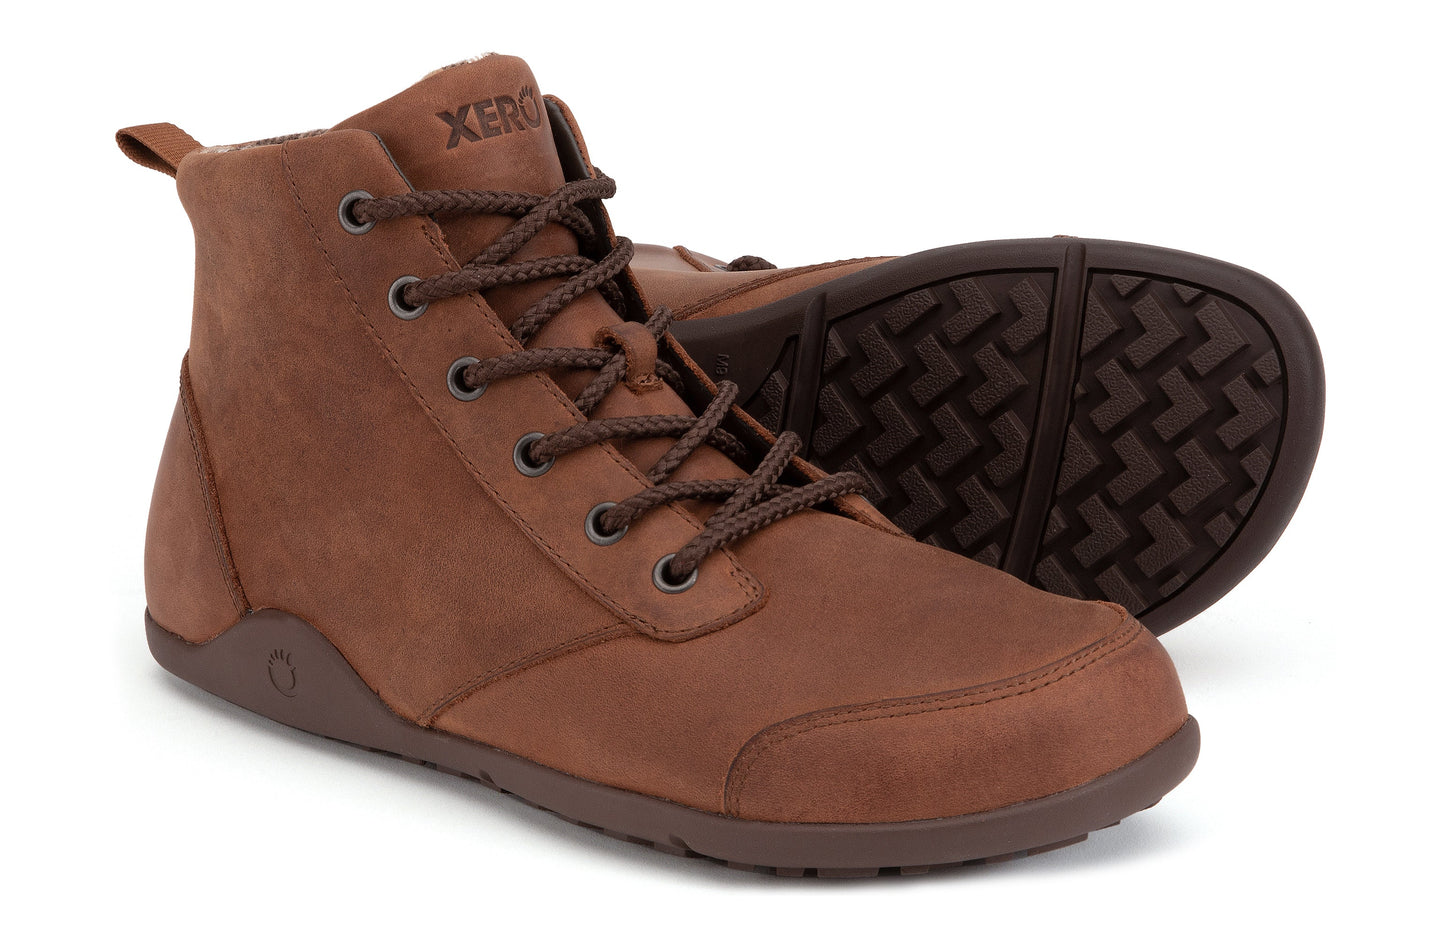 Xero Shoes Denver Leather barfods vinterstøvler til mænd i farven brown, vinklet